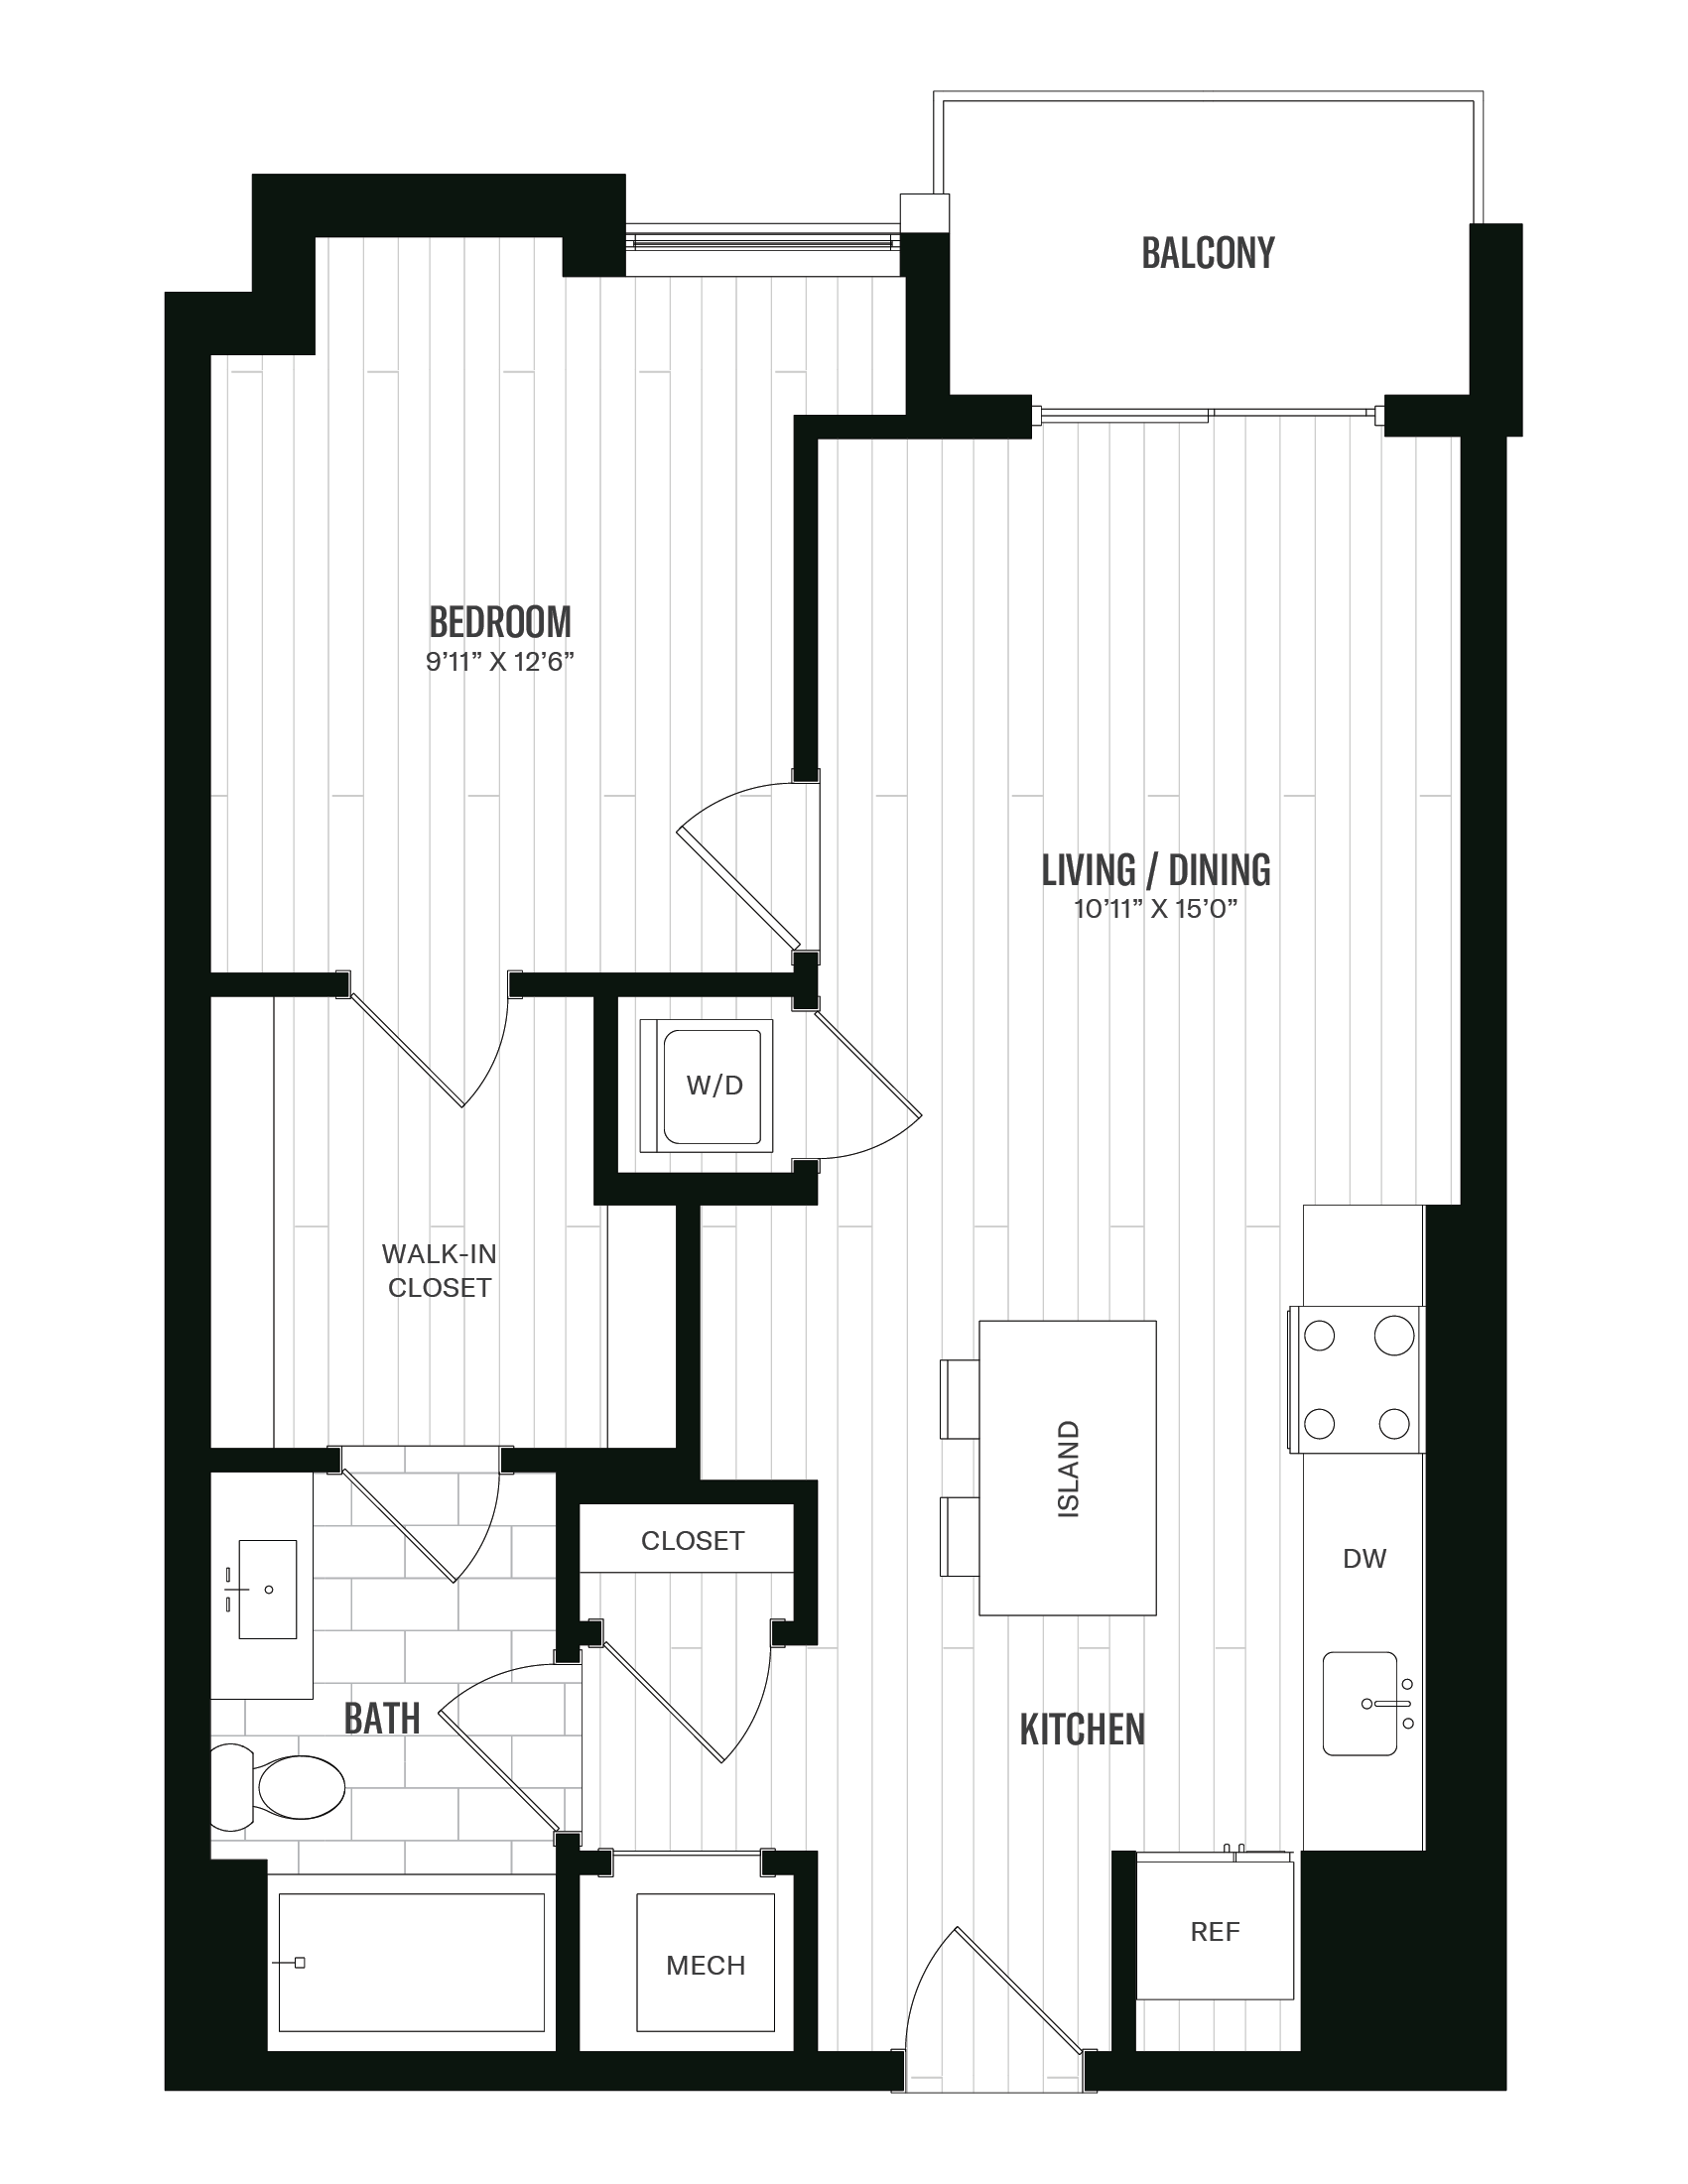 Floorplan image of unit 608